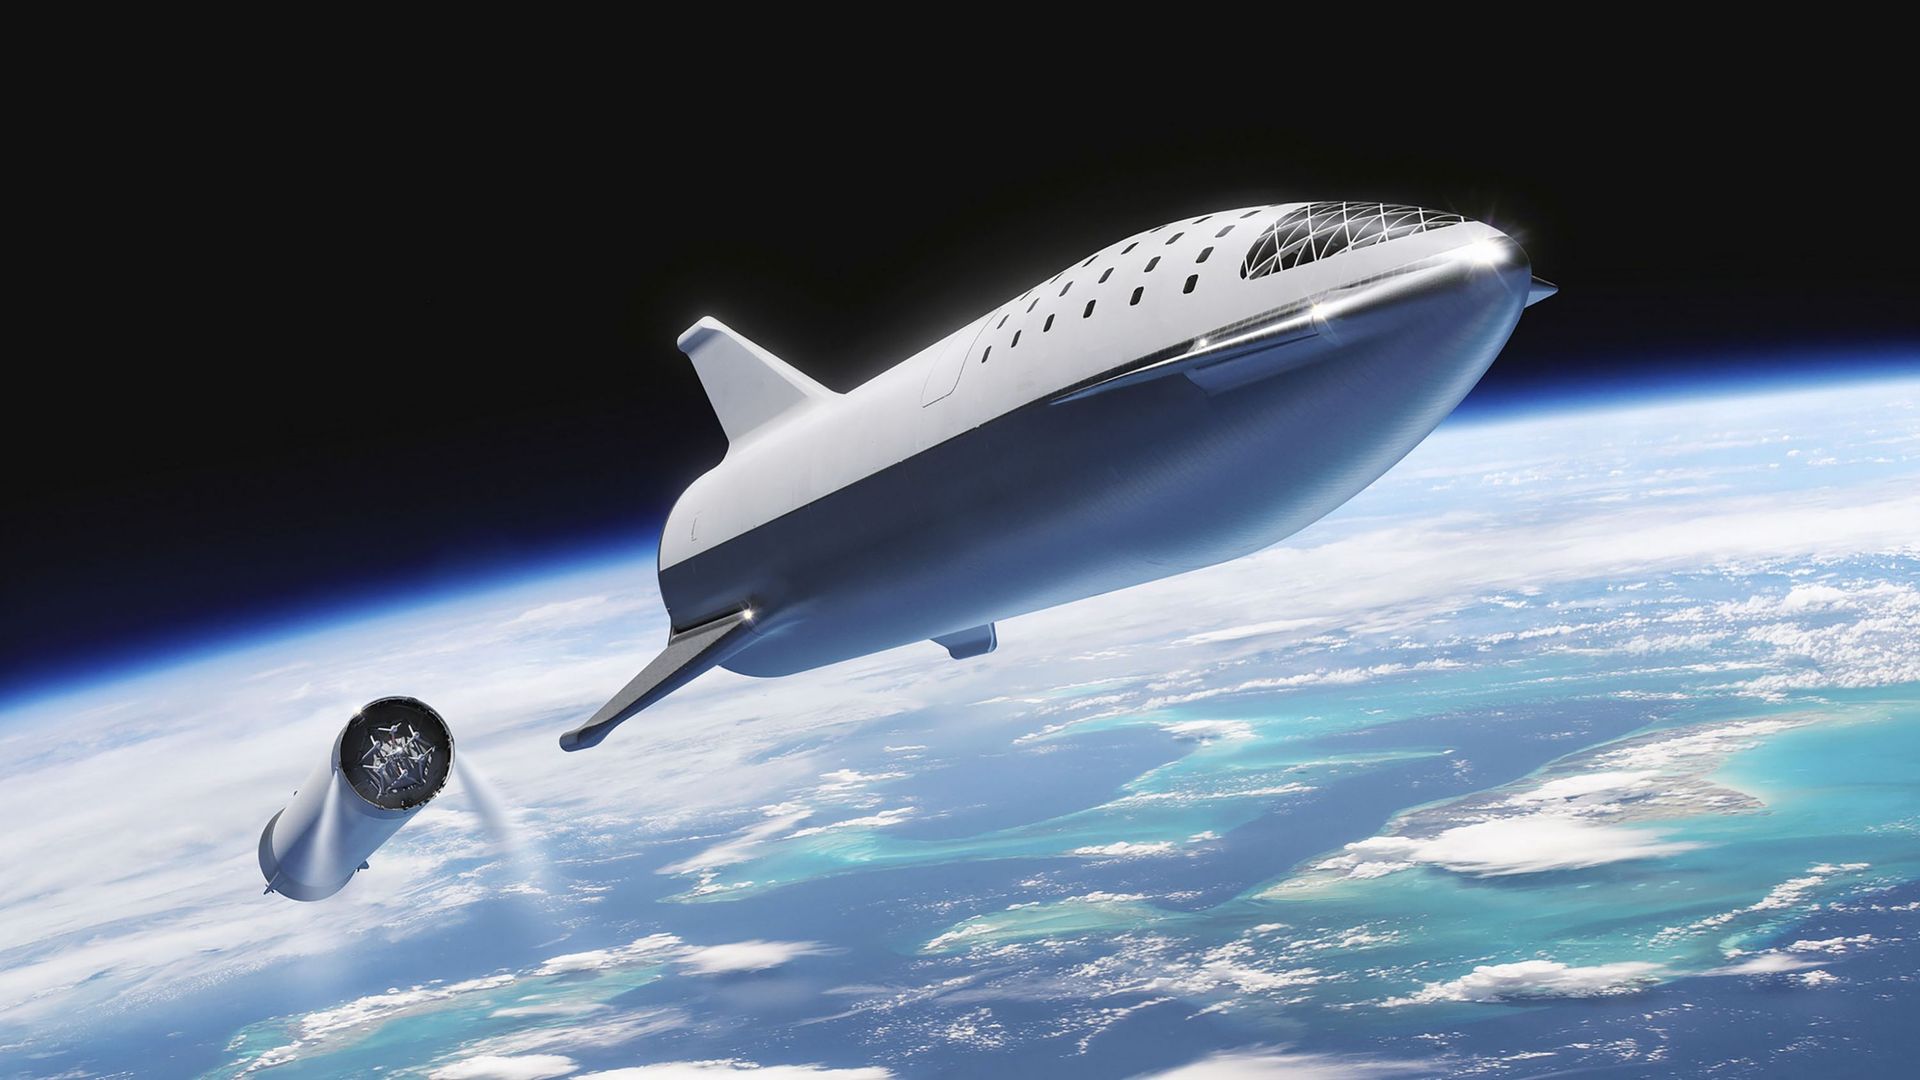 "Pour aller sur Mars, la société privée SpaceX me semble plus crédible que la Nasa"